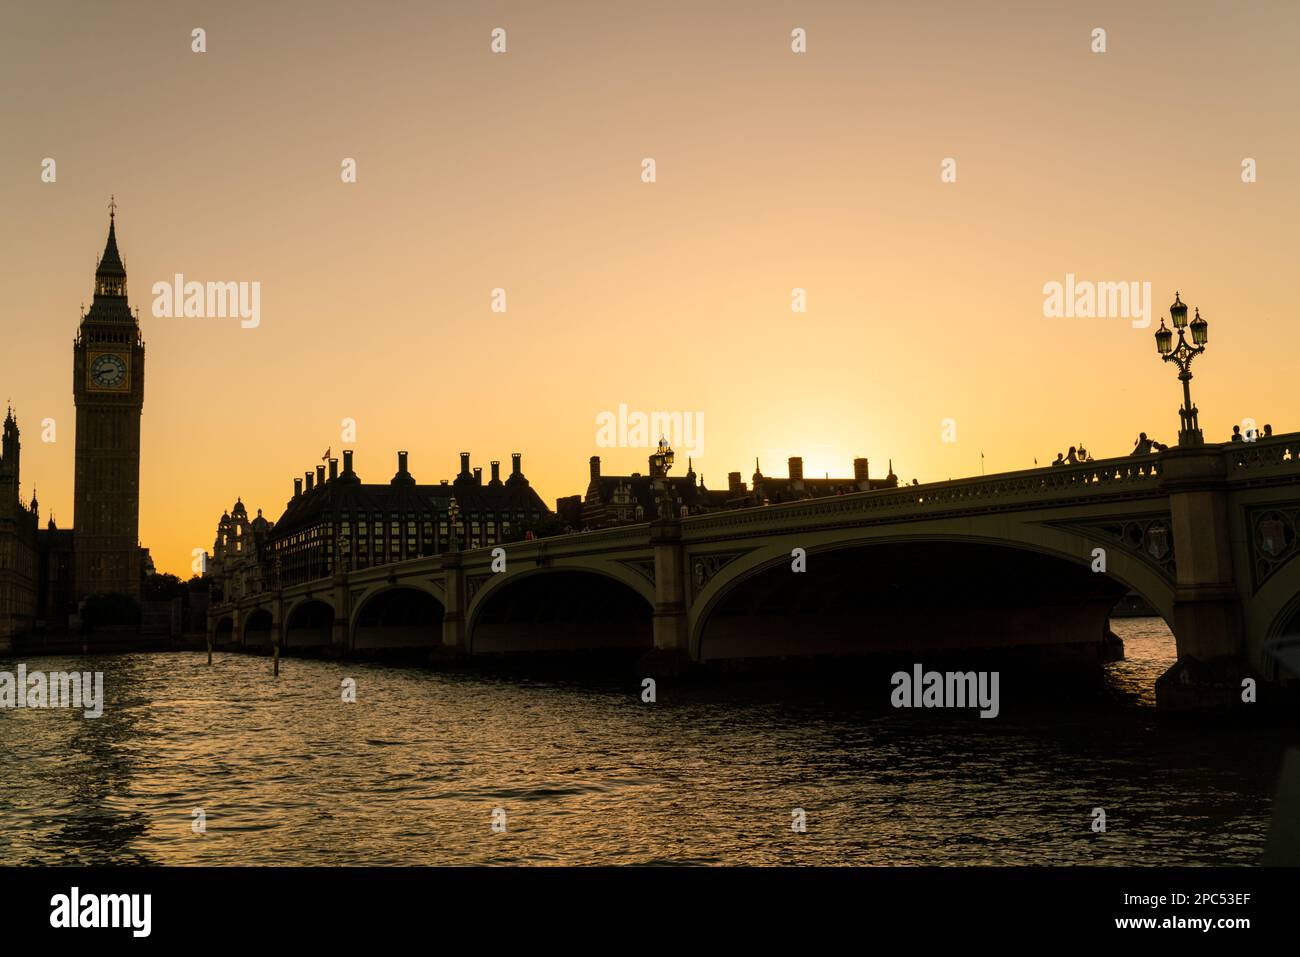 Les touristes anonymes traversent le pont de Westminster en direction du Parlement et de Big Ben au coucher du soleil à Londres, en Angleterre Banque D'Images